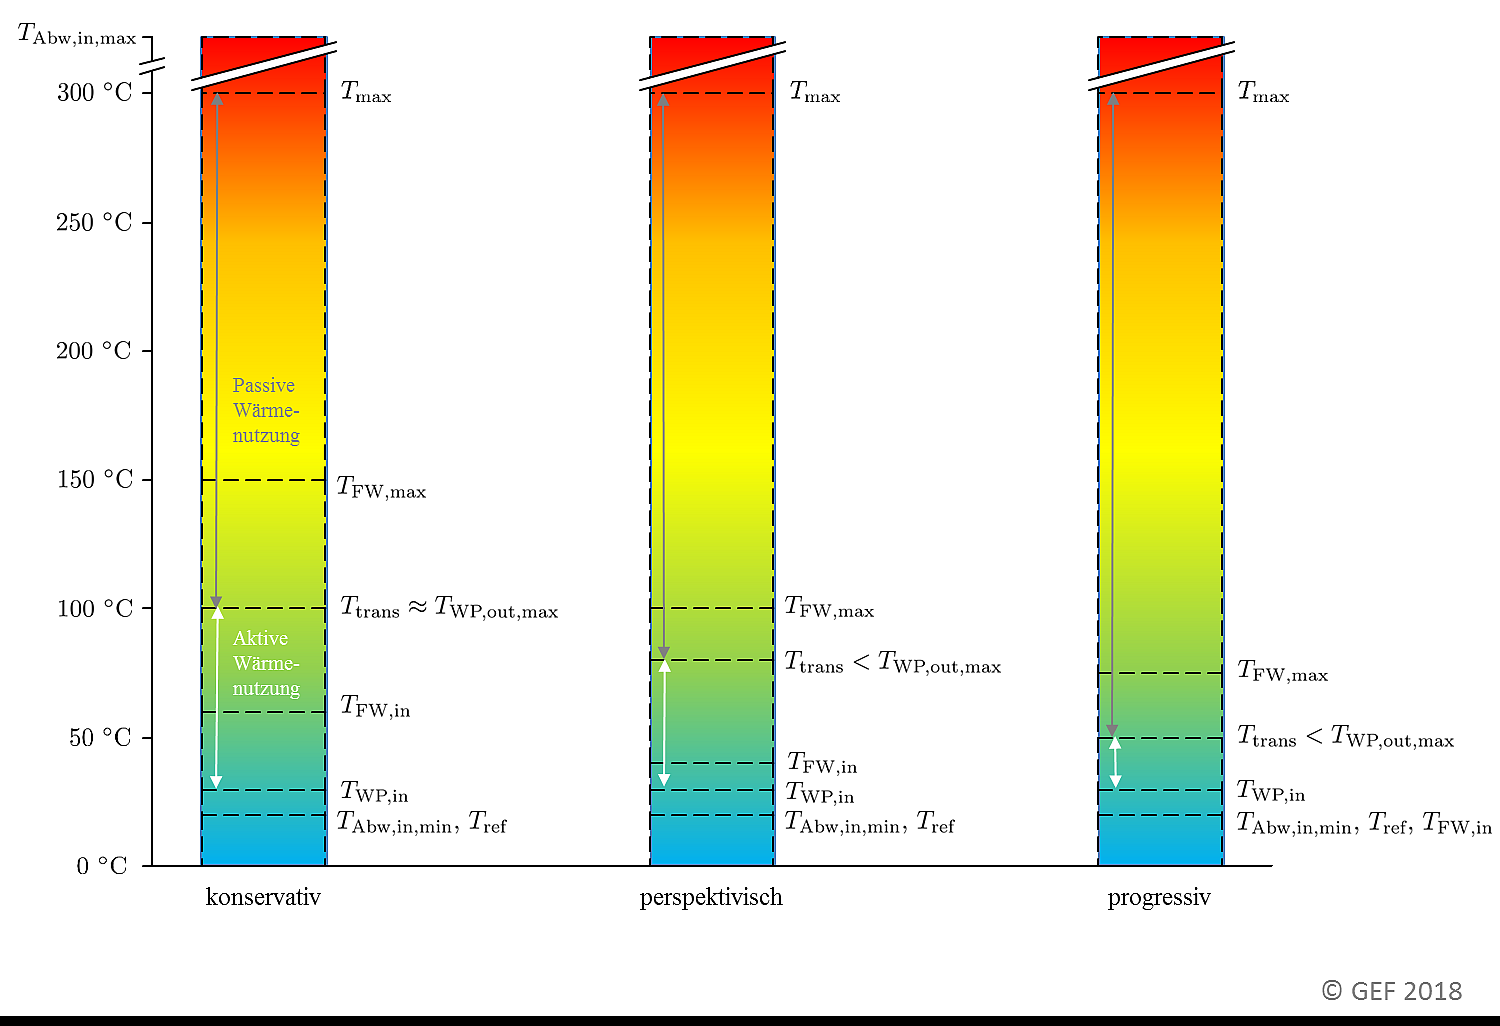 Angenommene Netzbetriebstemperaturen im Basisszenario (konservativ) sowie bei perspektivischer/progressiver Temperaturabsenkung